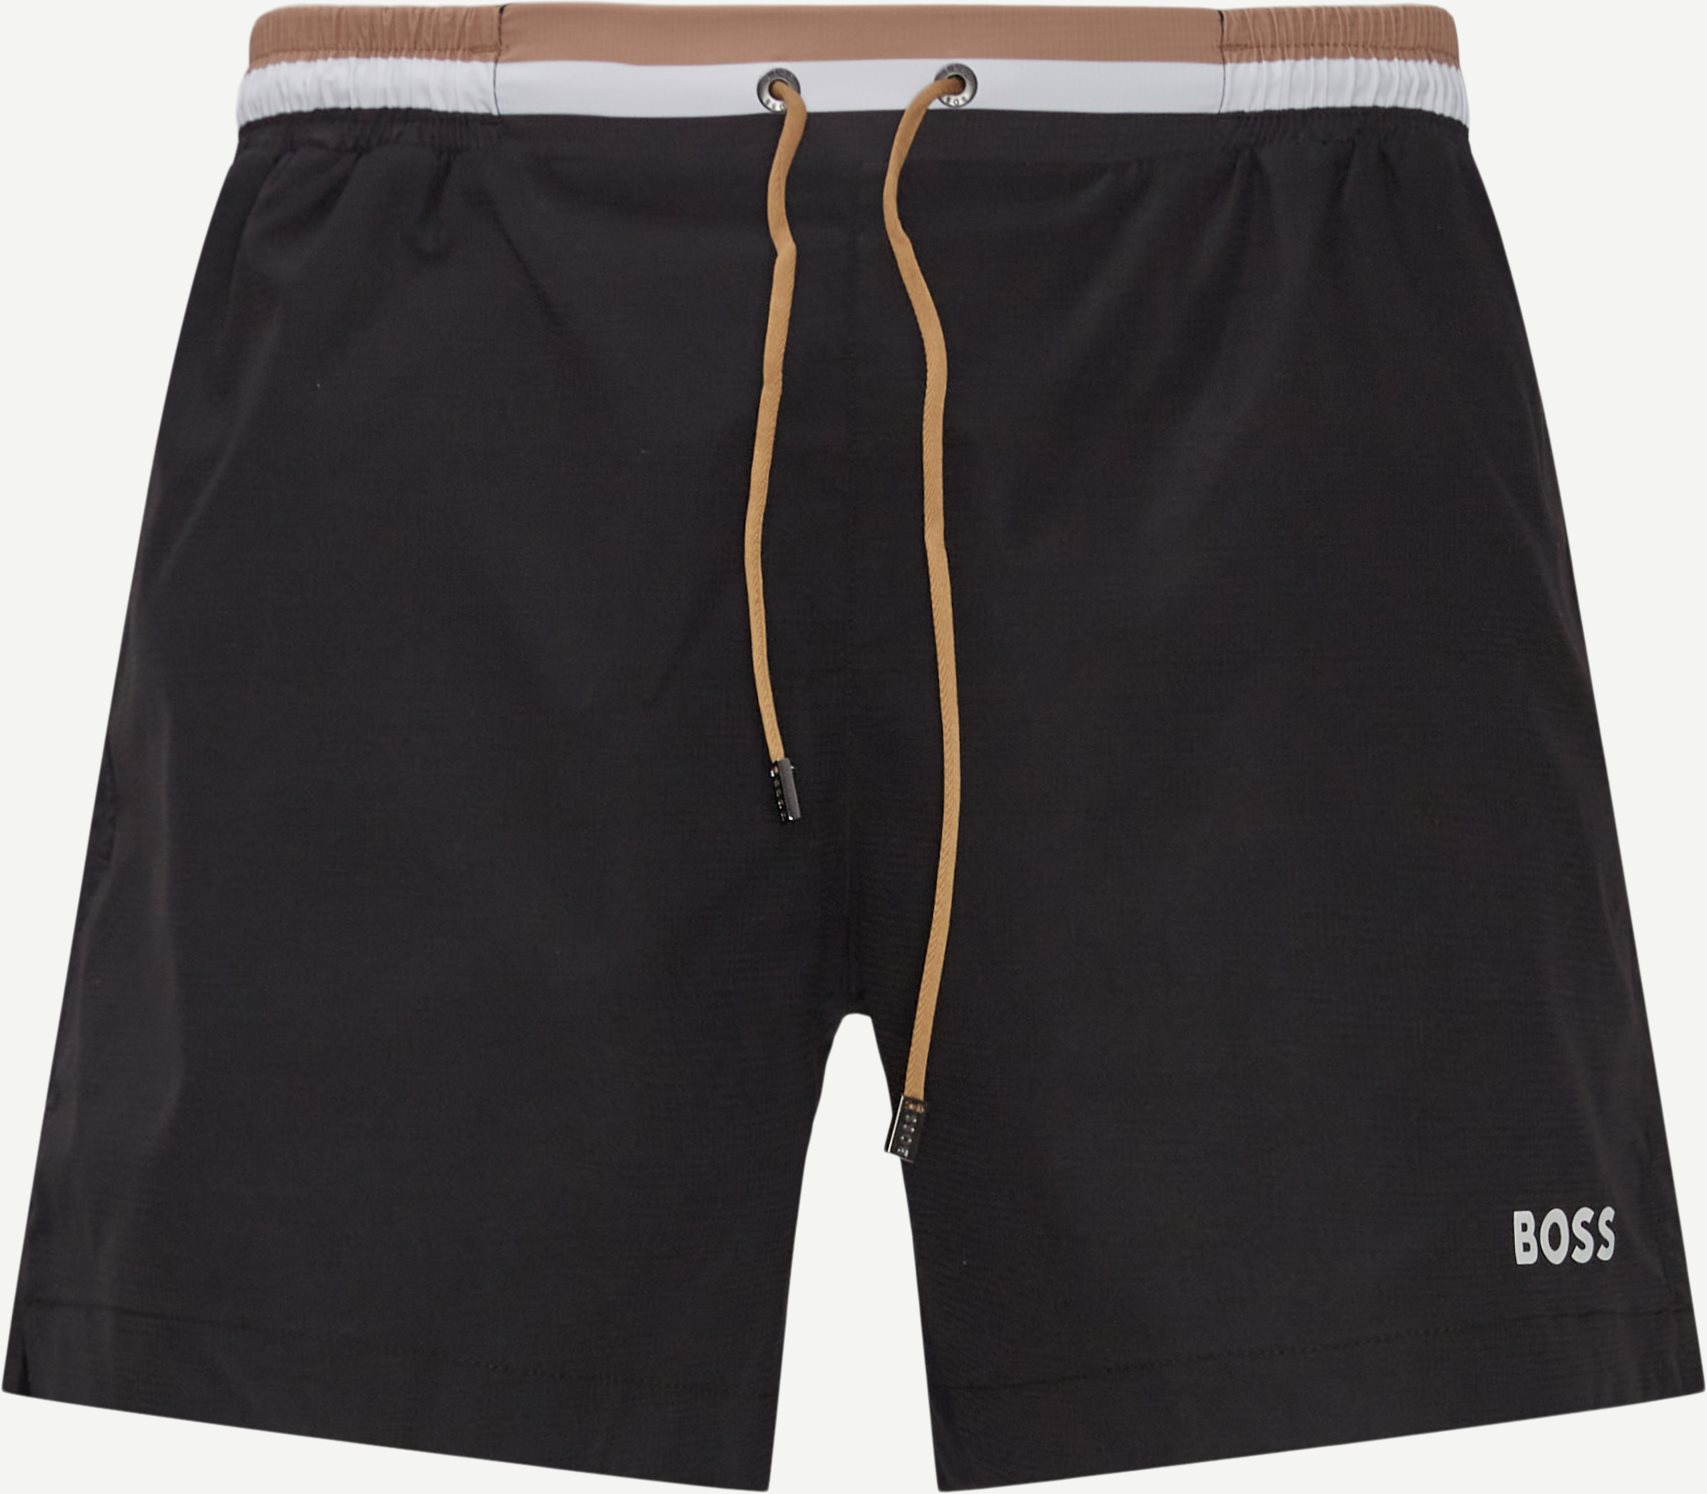 Atoll Badeshorts - Shorts - Regular fit - Sort